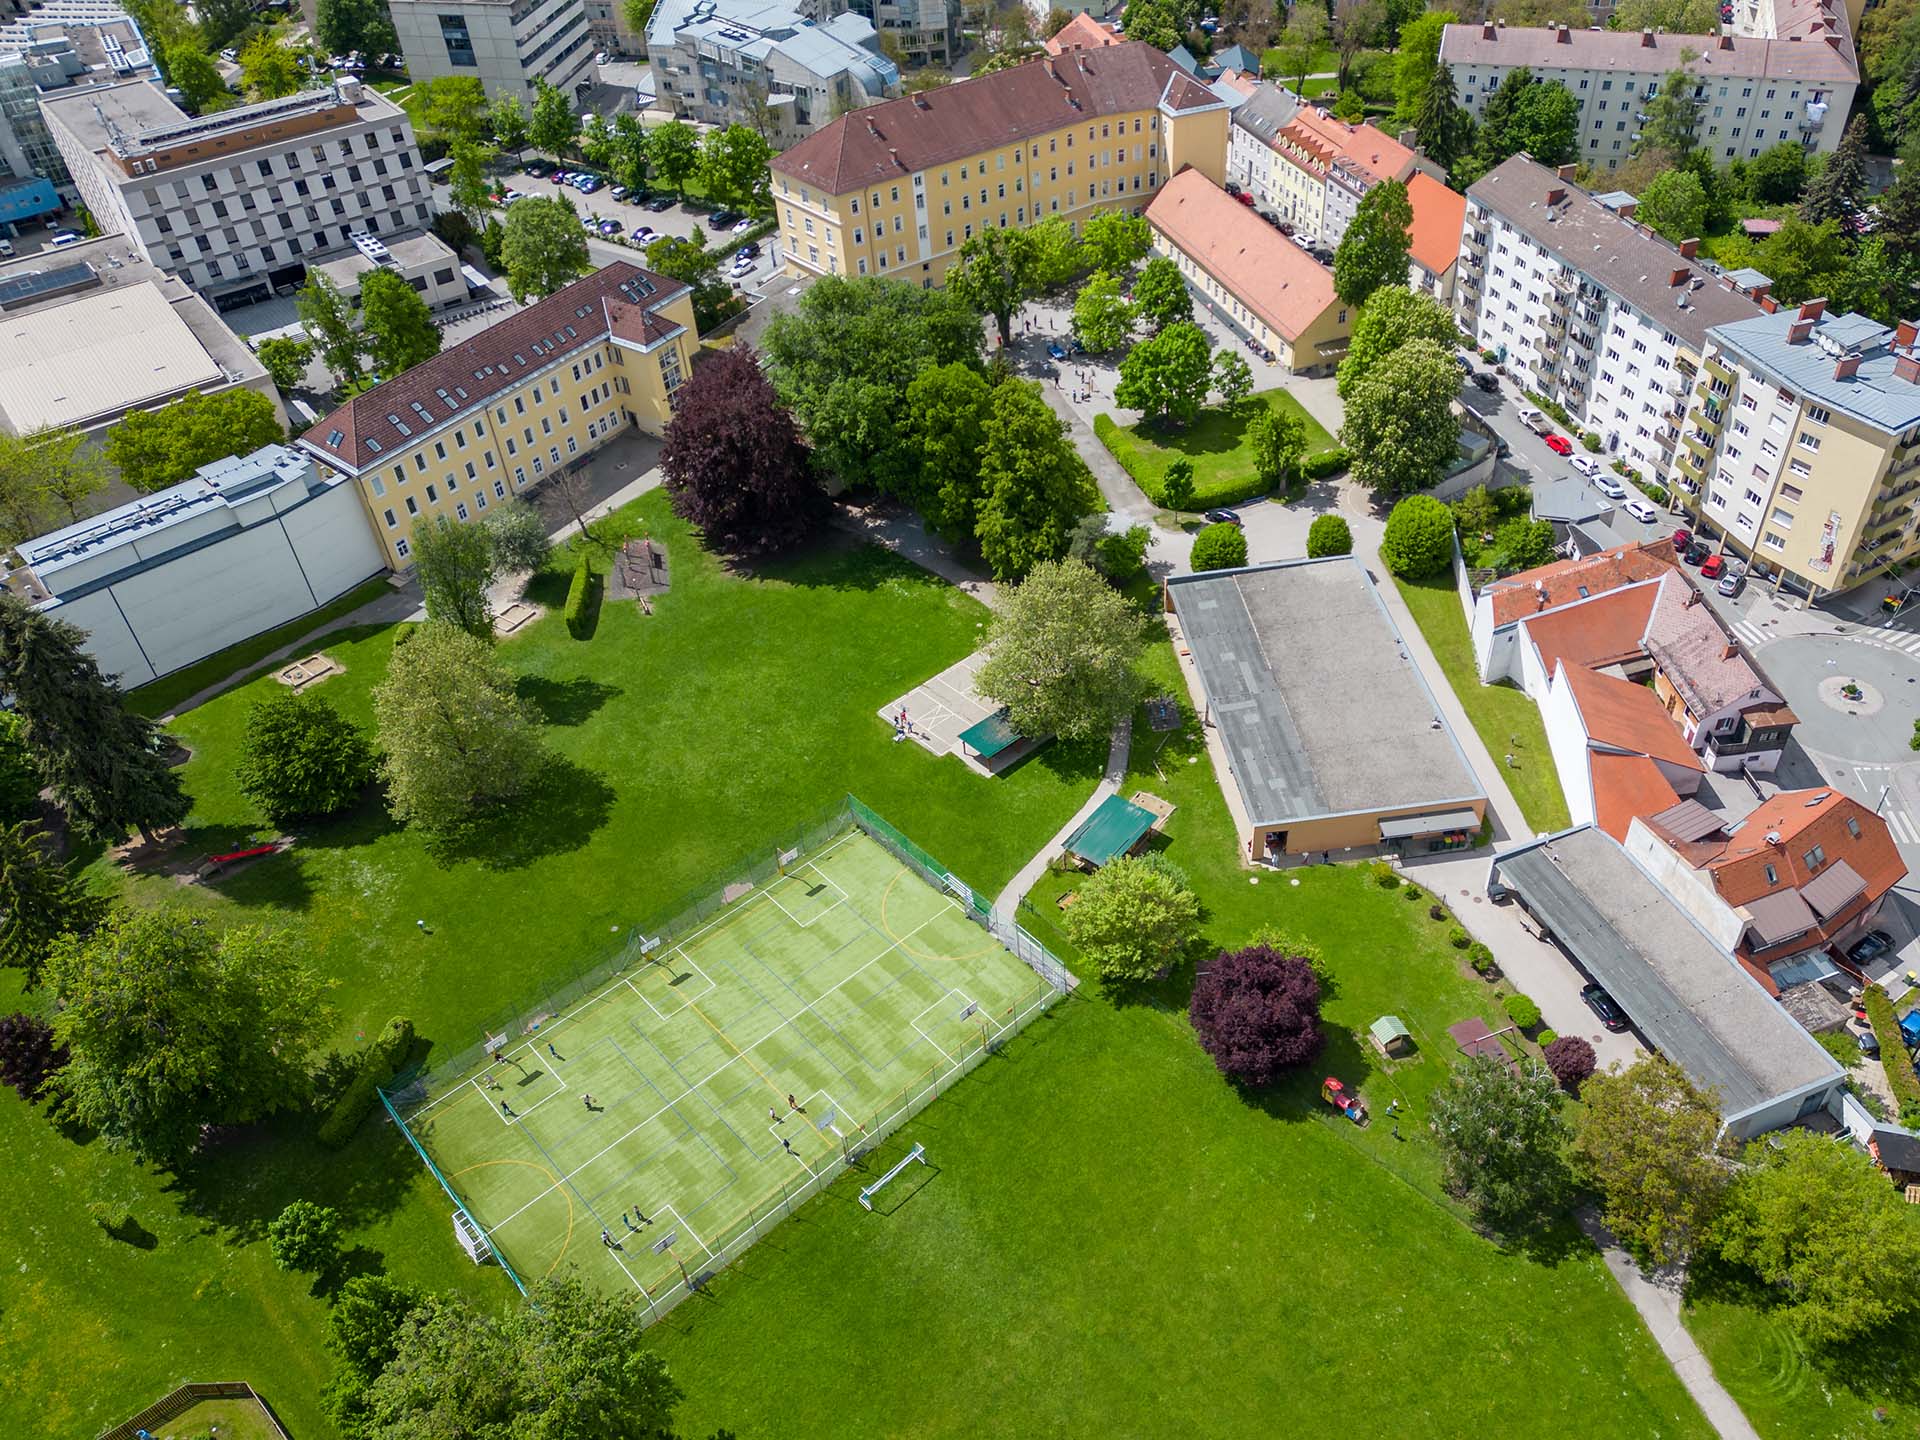 Graz - Campus Sacre Coeur